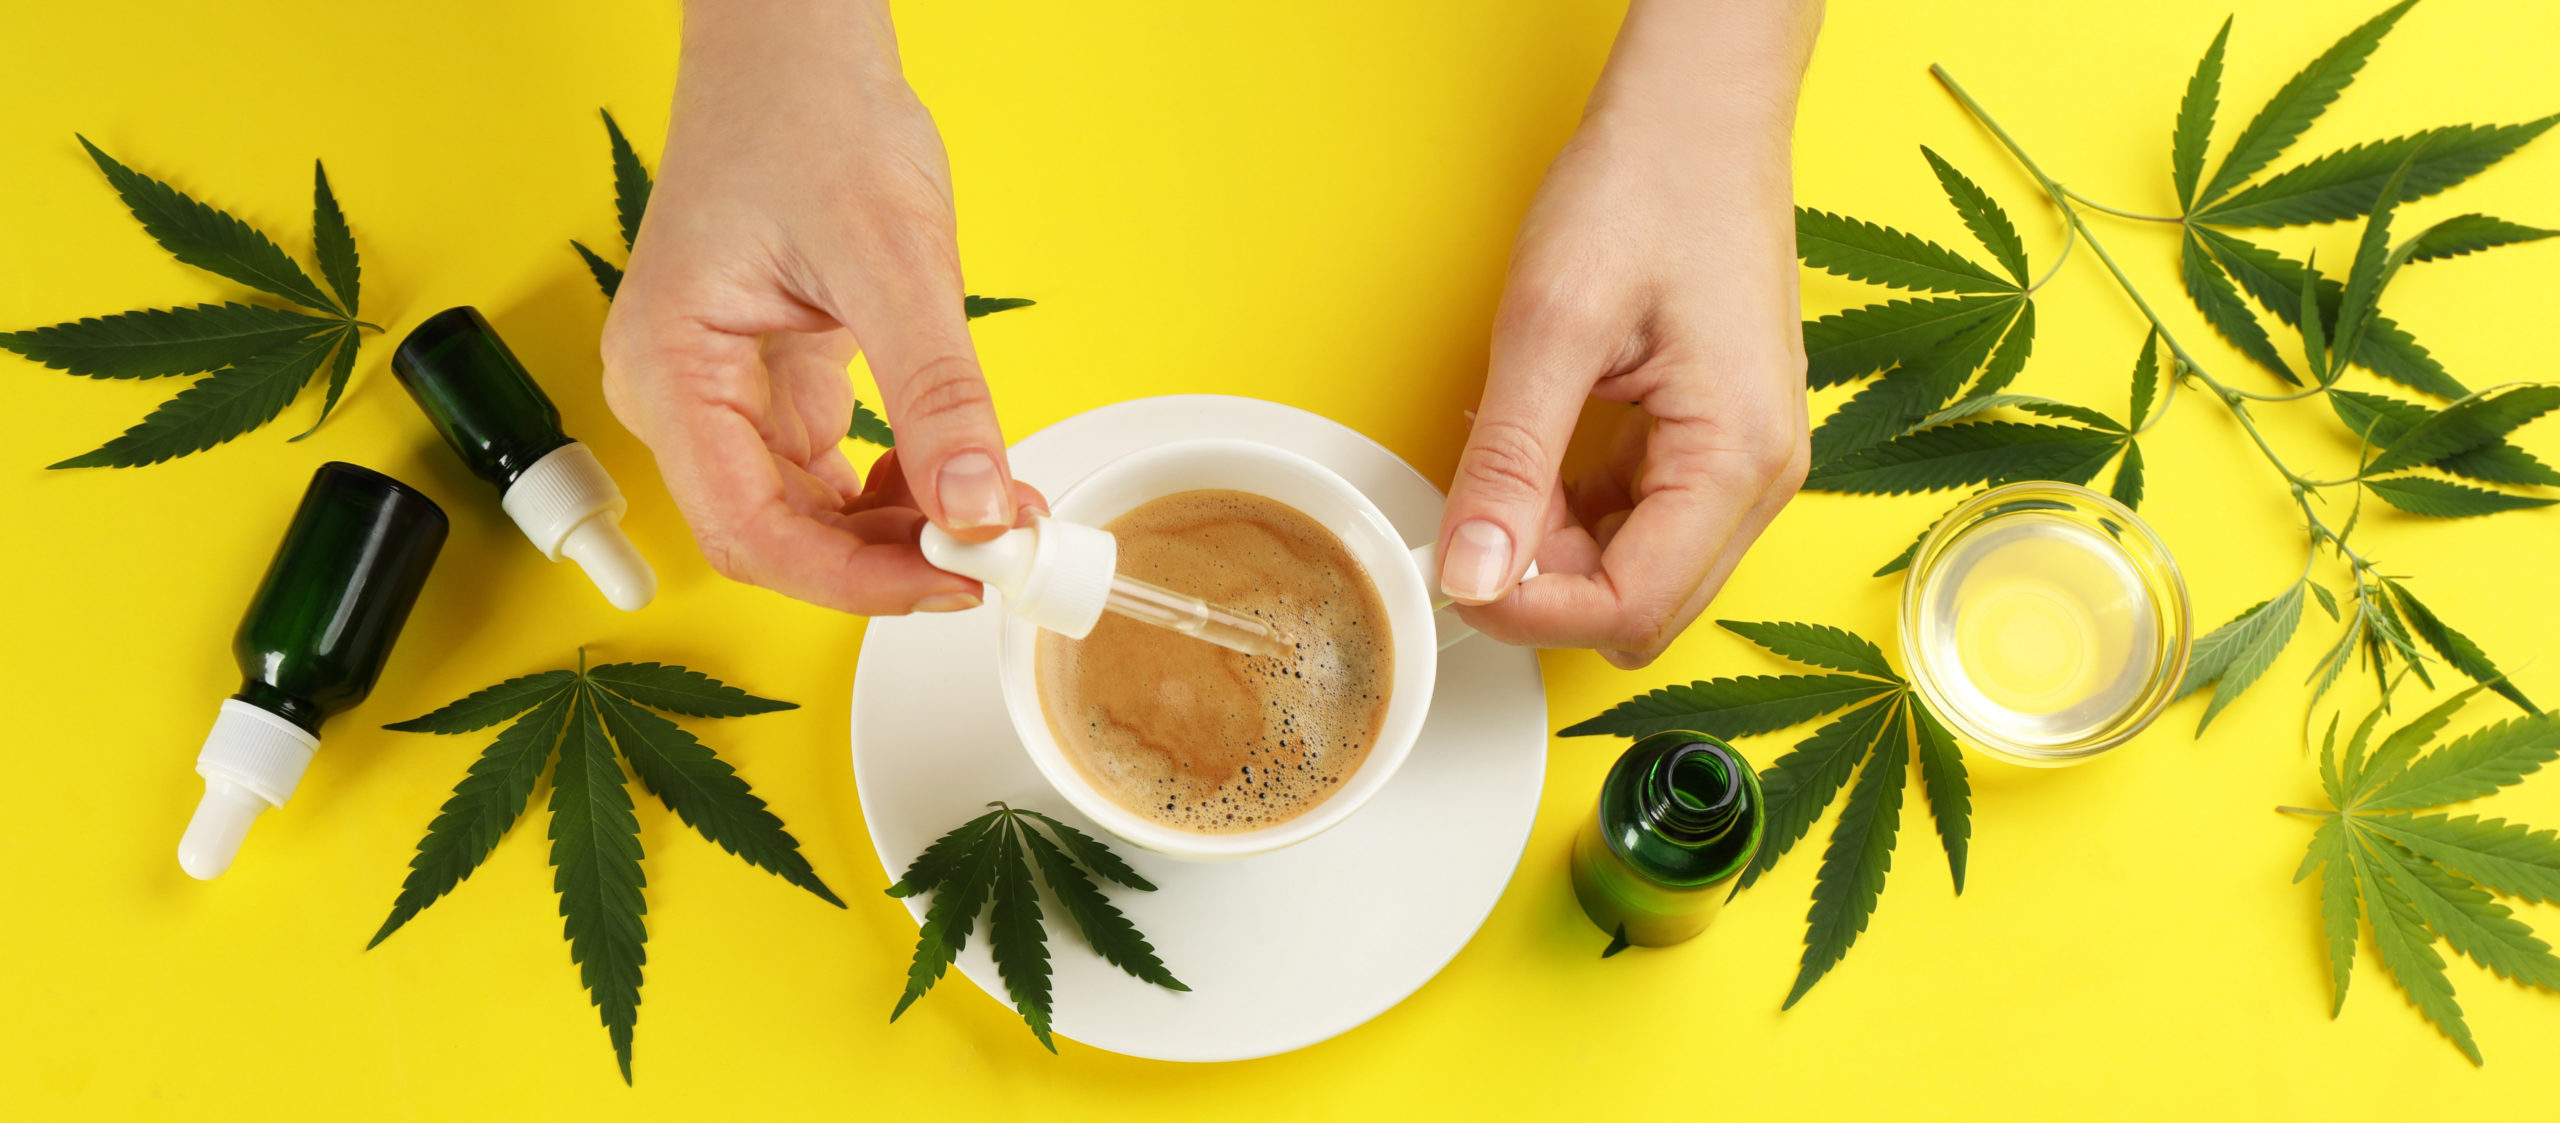 caffeine and cannabis